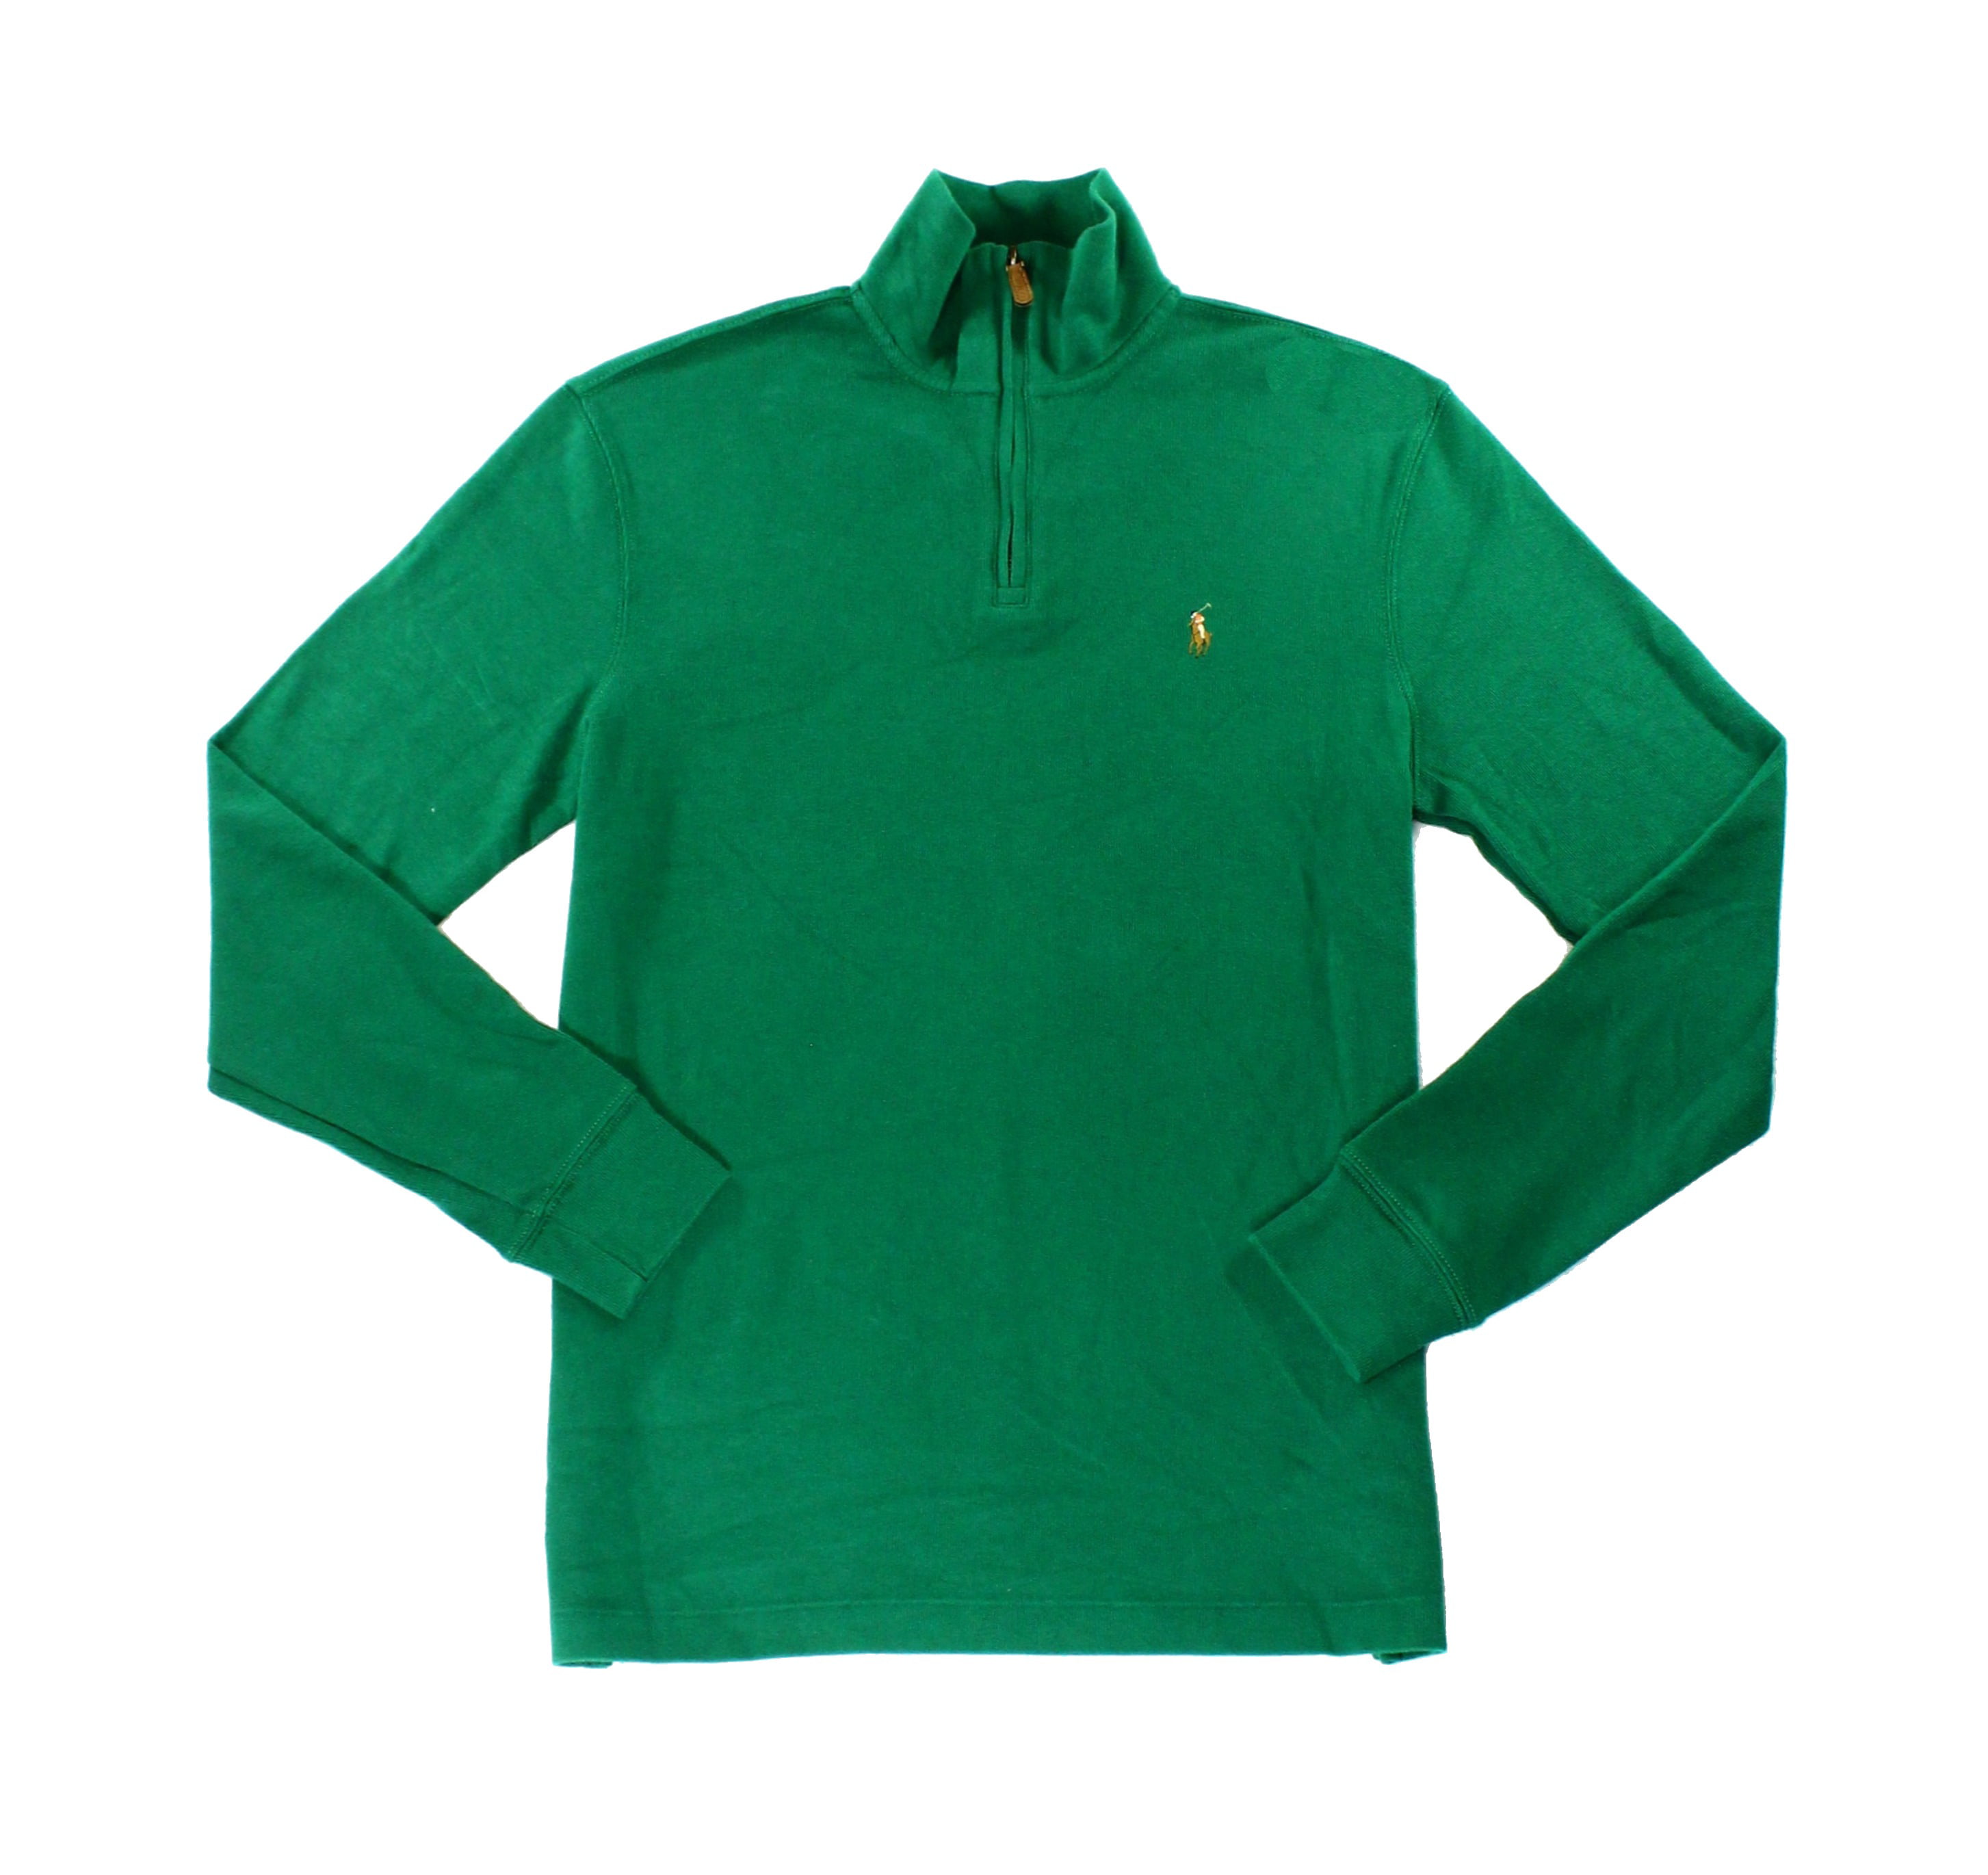 Ralph Lauren Mens Quarter Zip Knit Sweater, Green, X-Large - Walmart.com